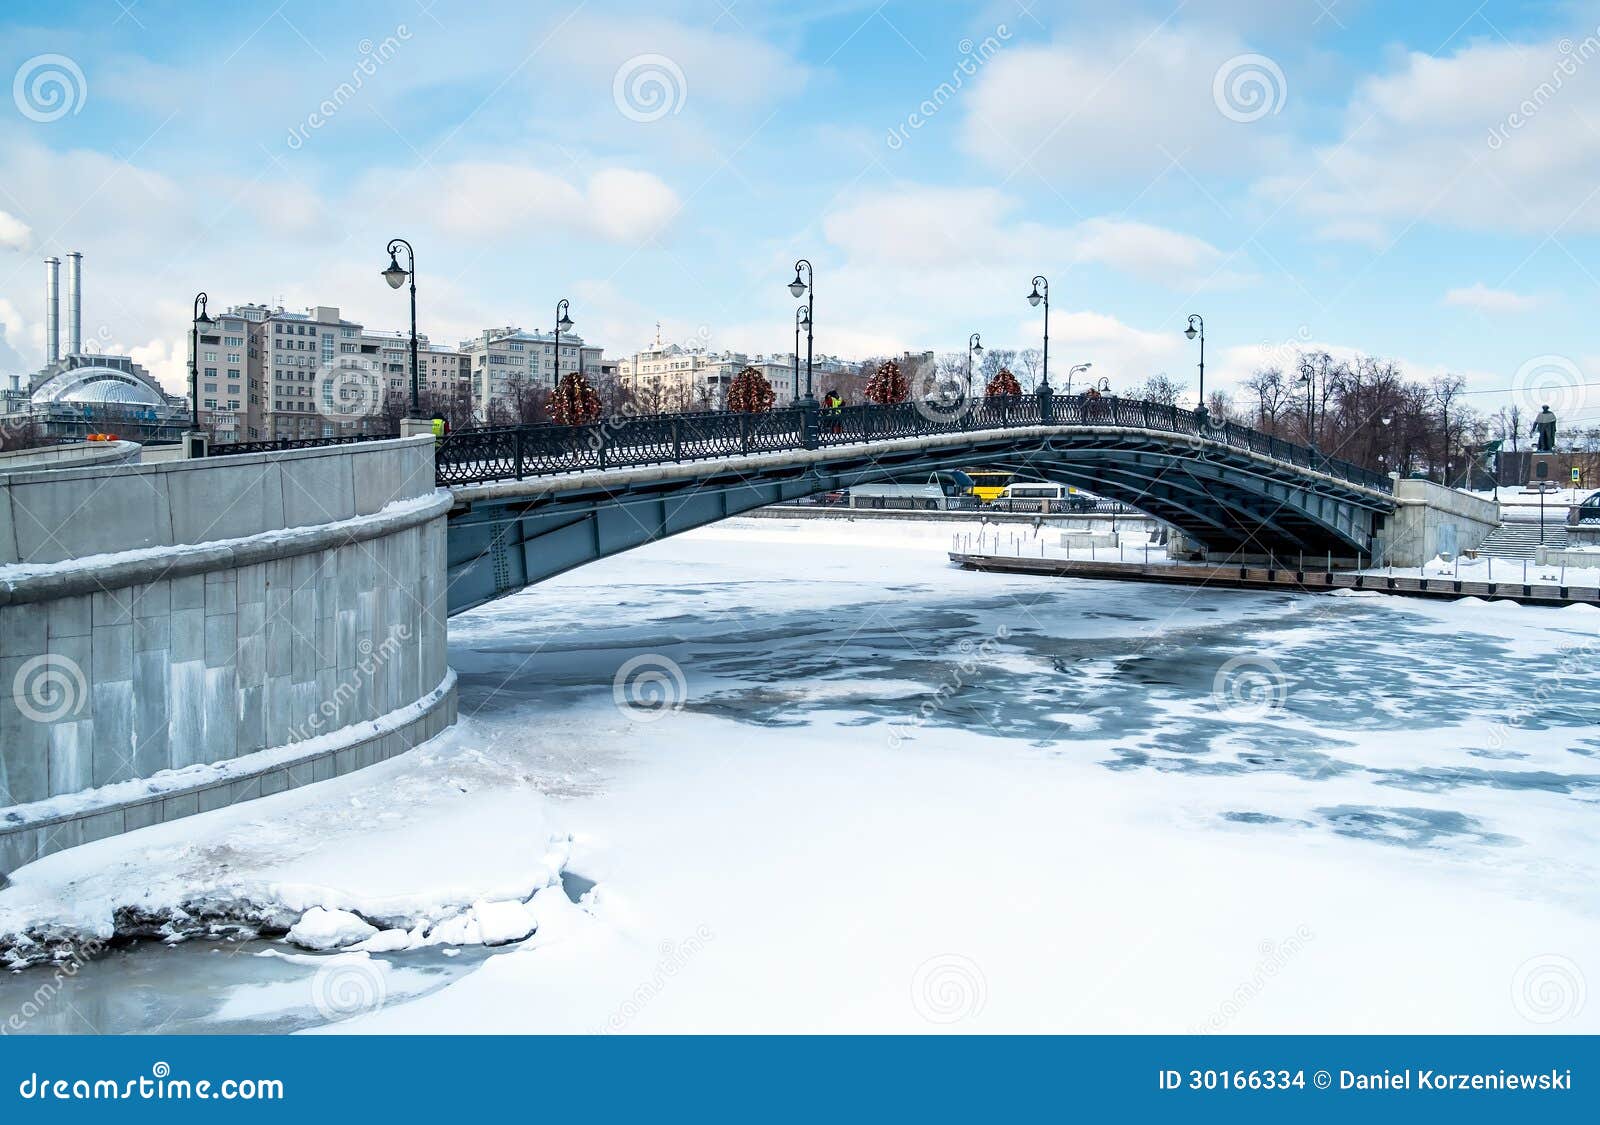 bridge over moskva river